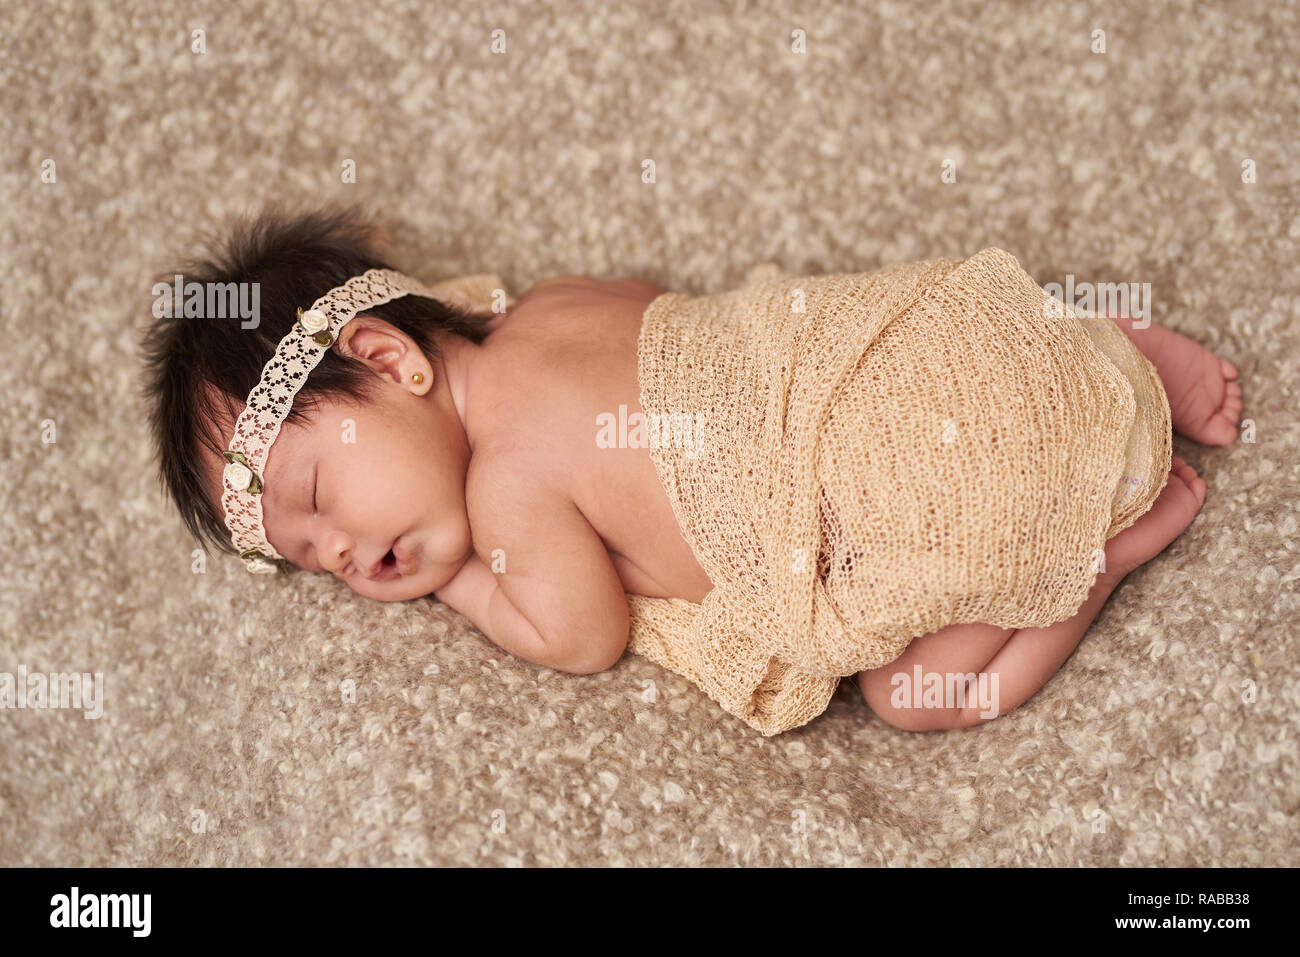 Über Ausblick auf den Kleinen schlafen Neugeborenes Baby auf braune weiche Decke Stockfoto